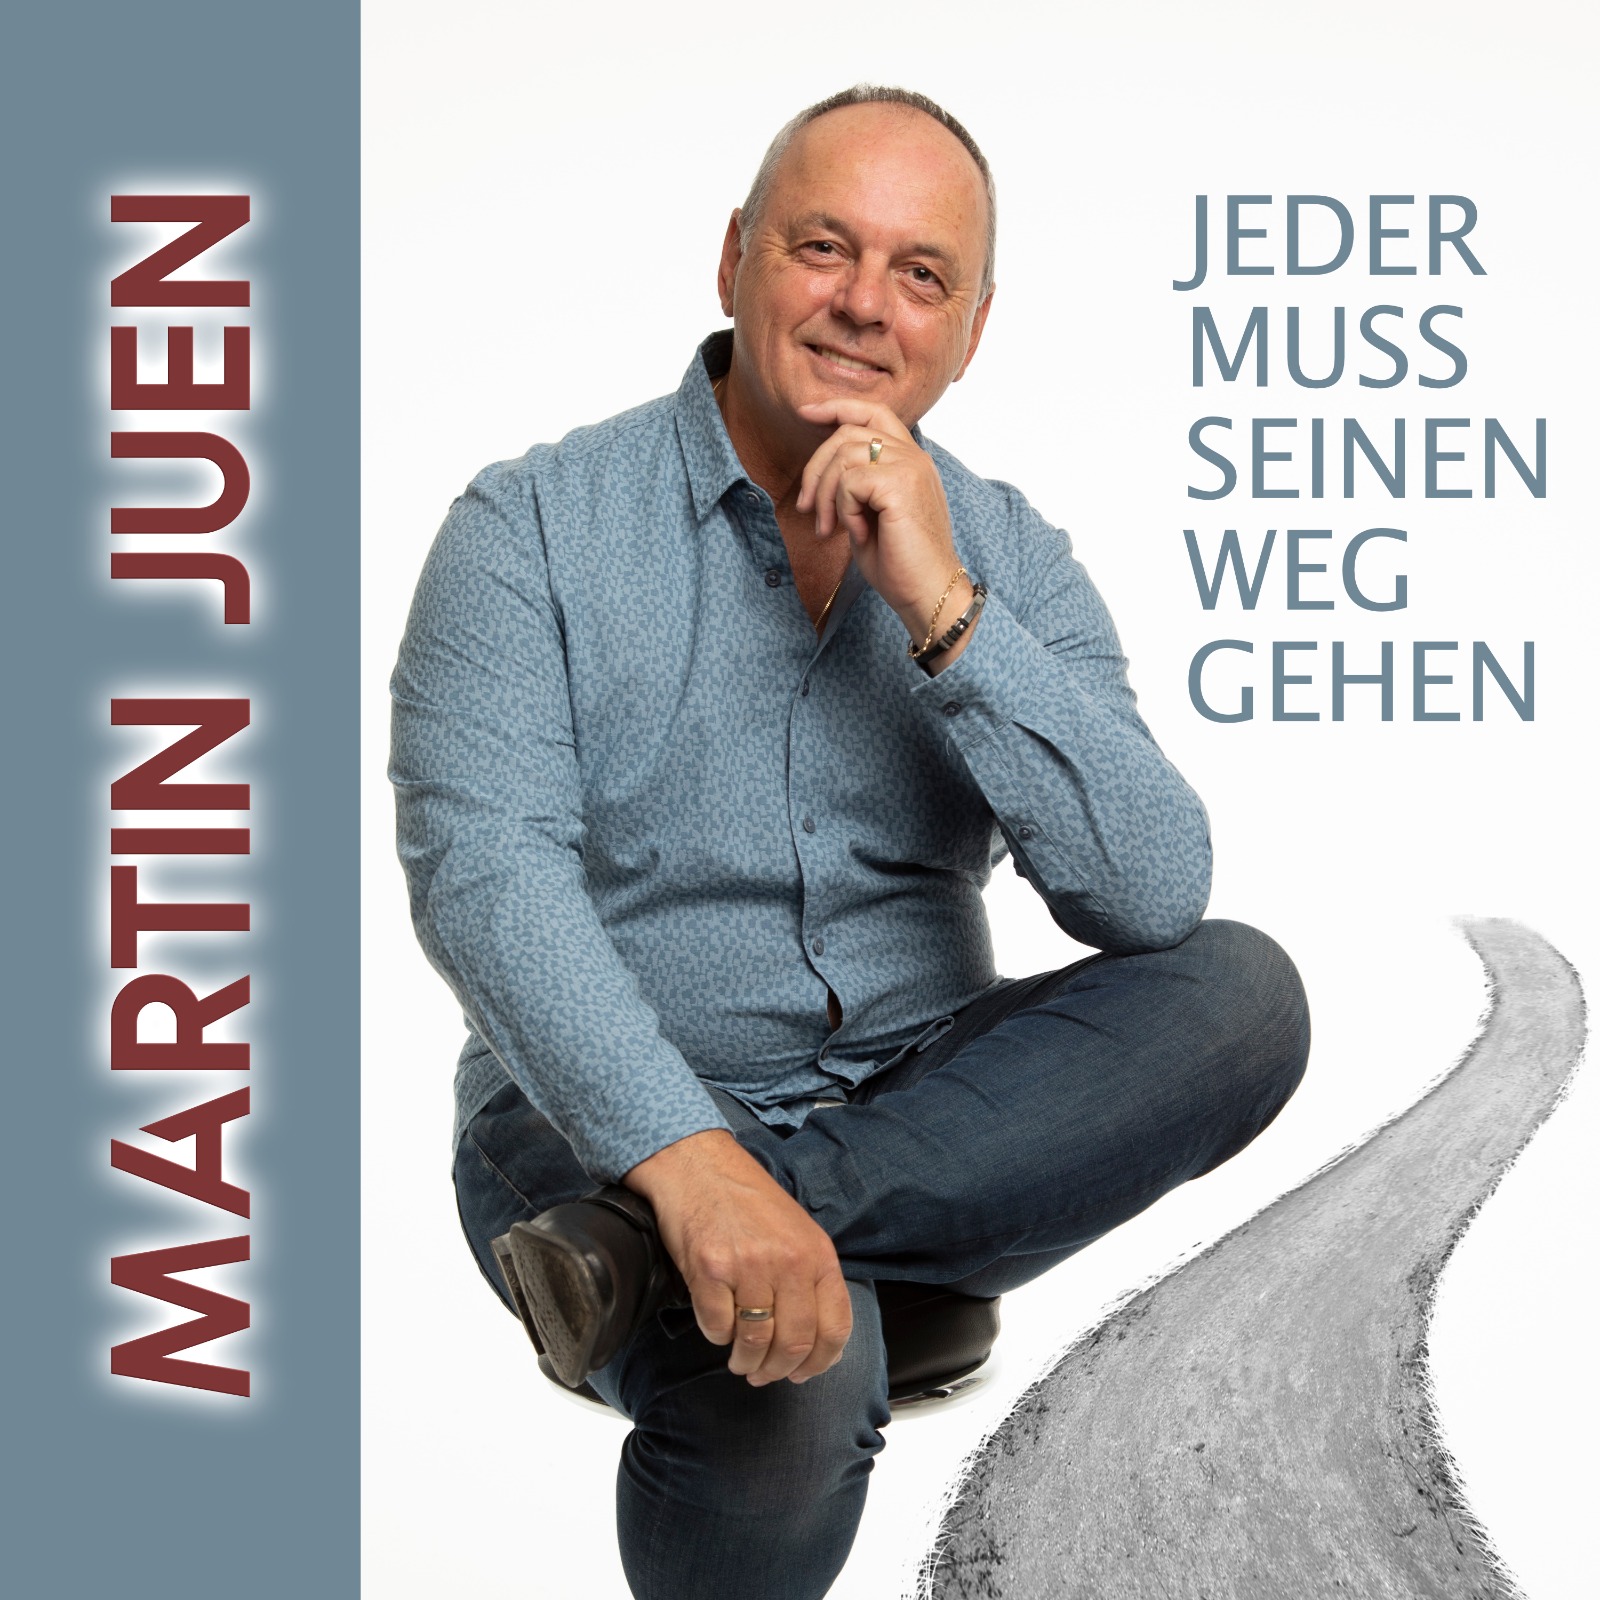 Martin Juen - Jeder muss seinen weg gehen - Cover.jpg